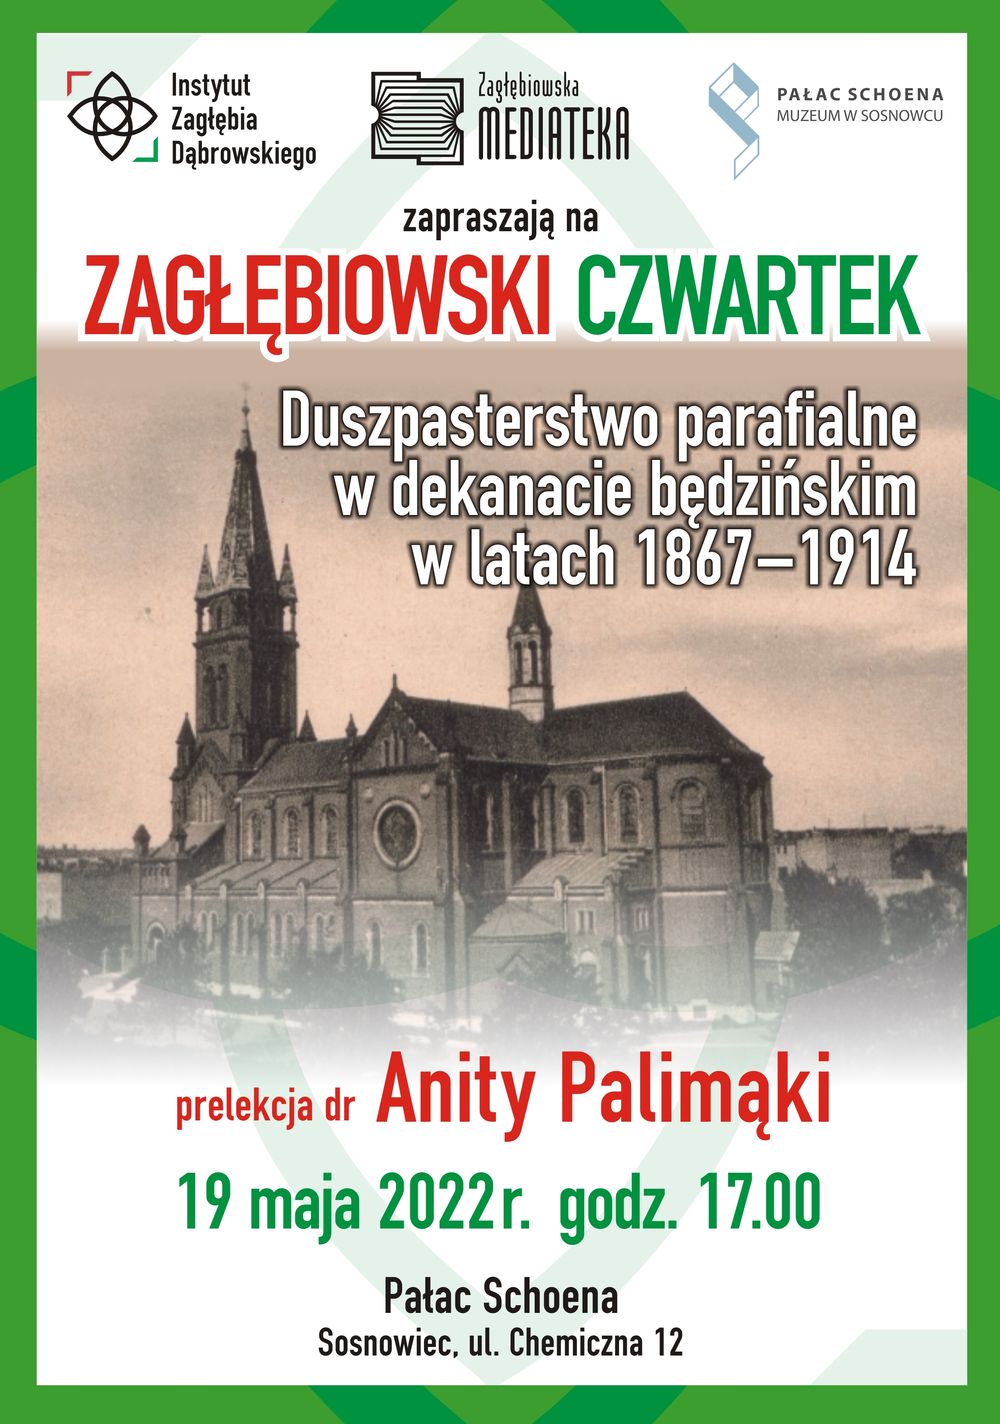 Zagłębiowski Czwartek już 19 maja w Pałacu Schoena!